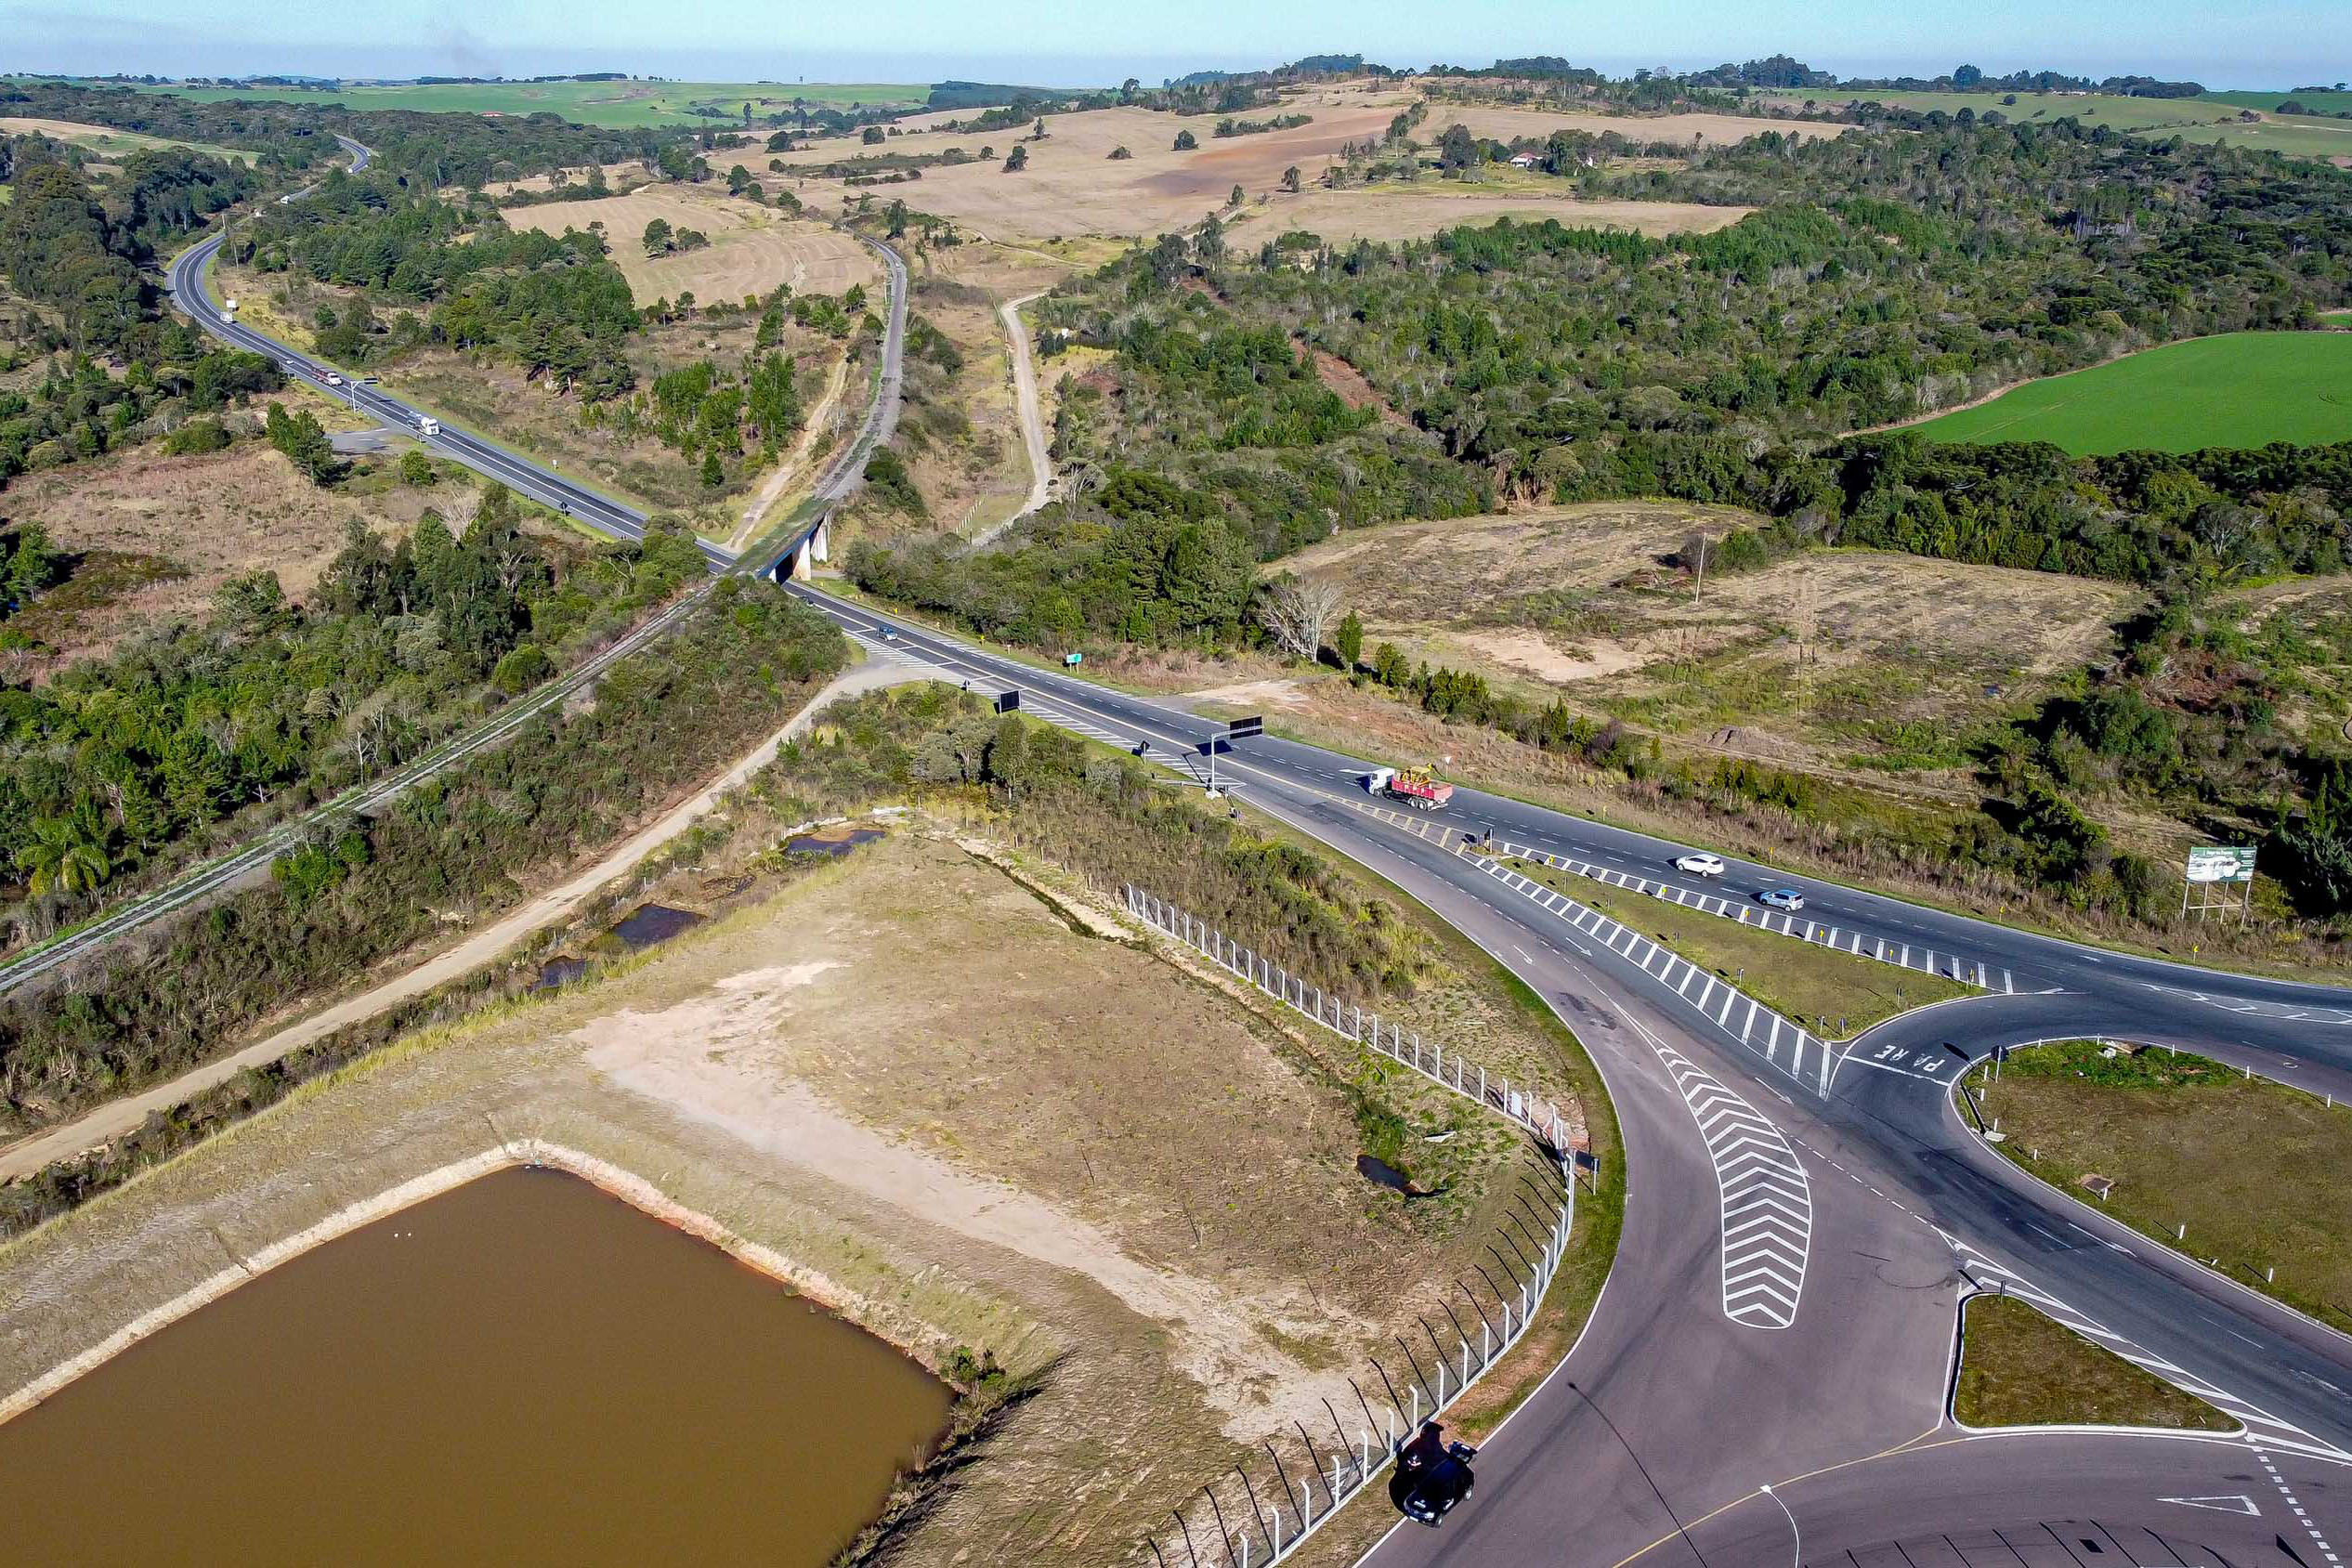 Leilão do 1º lote das novas concessões rodoviárias do Paraná será na próxima semana. Na foto, a BR-277 com PR-427. Foto: Roberto Dziura Jr/AEN